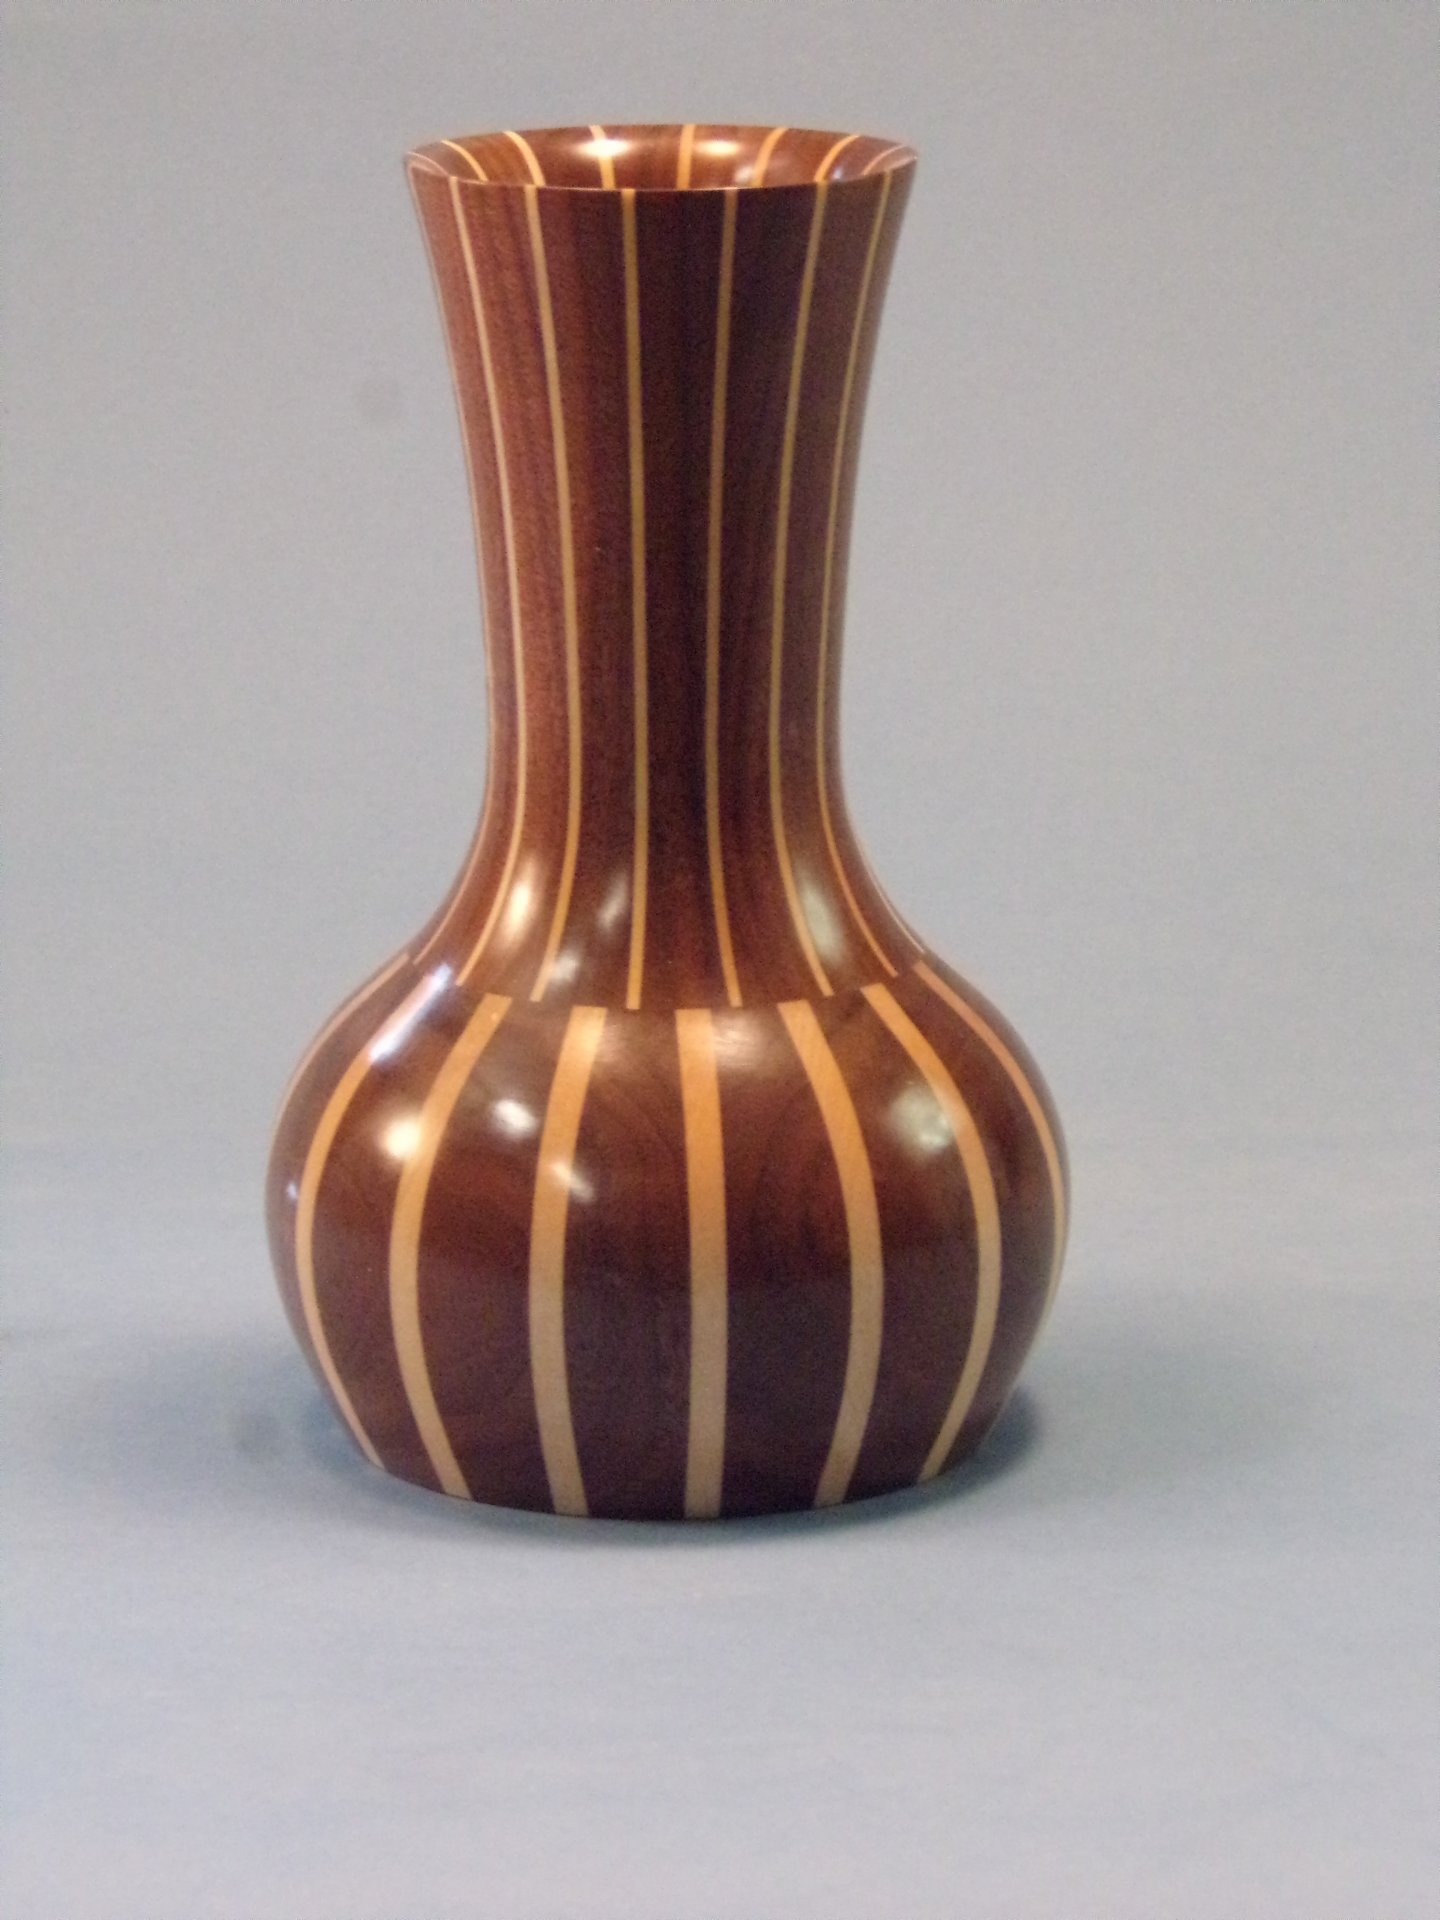 Staved Vase